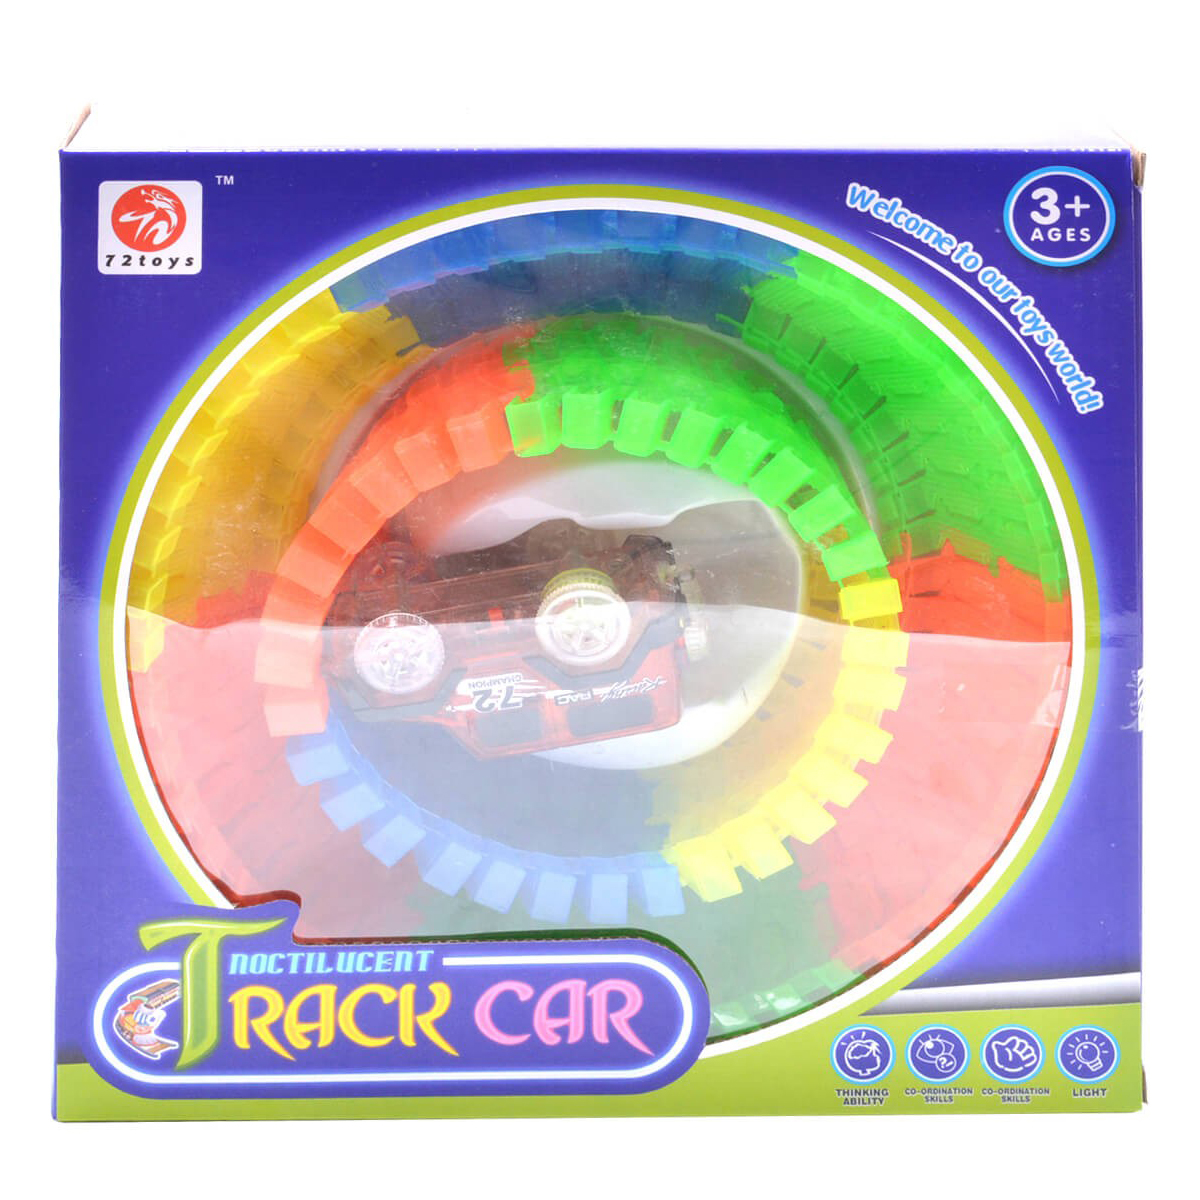 Noctilucent Track Car 80 Pcs - Multicolor